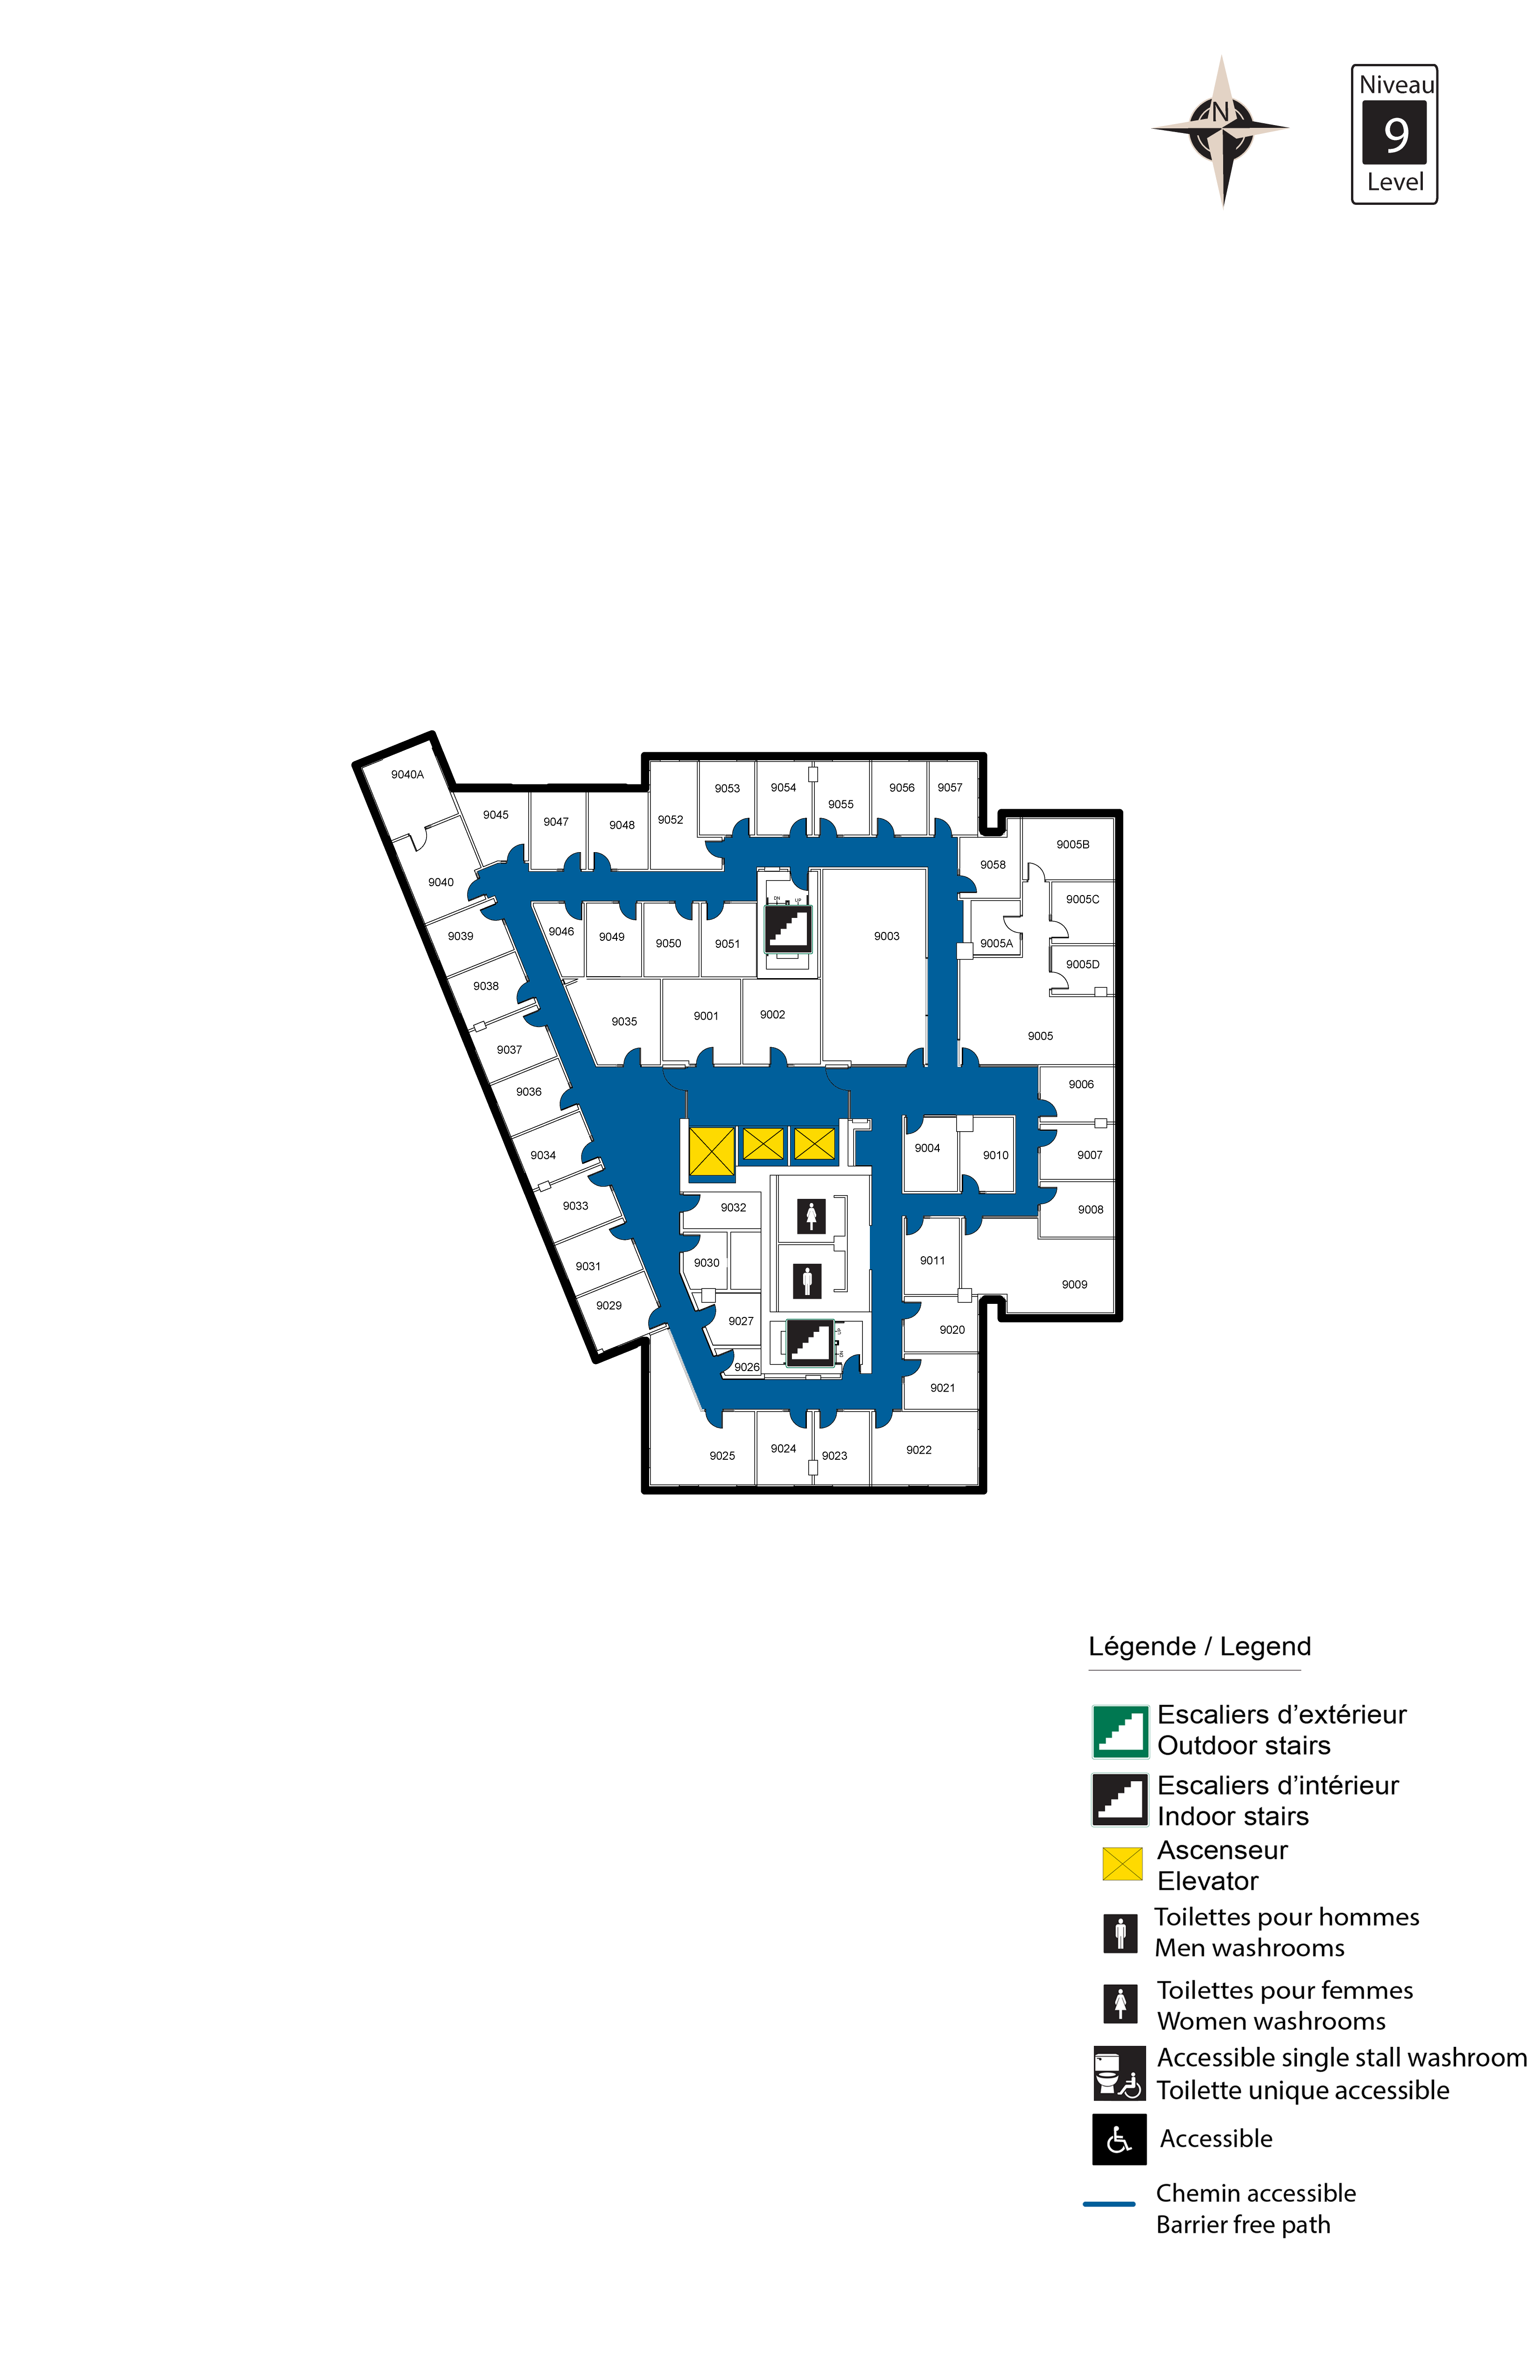 Social Sciences building floor map